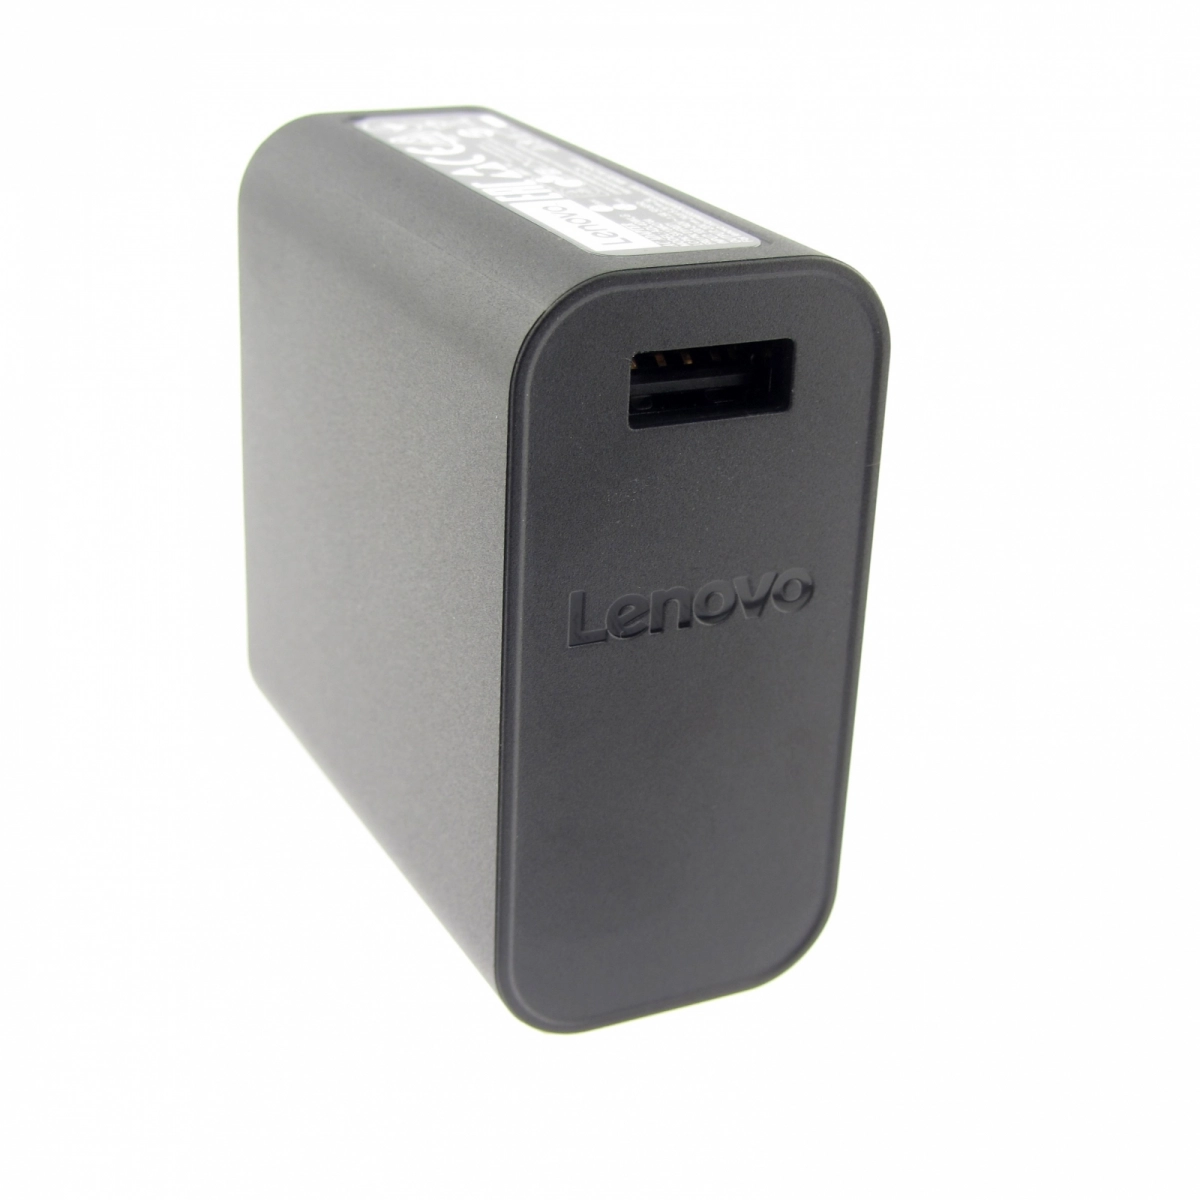 Original Netzteil für LENOVO 80HE0049US, 20V, 2A, Stecker USB, ohne USB-Kabel